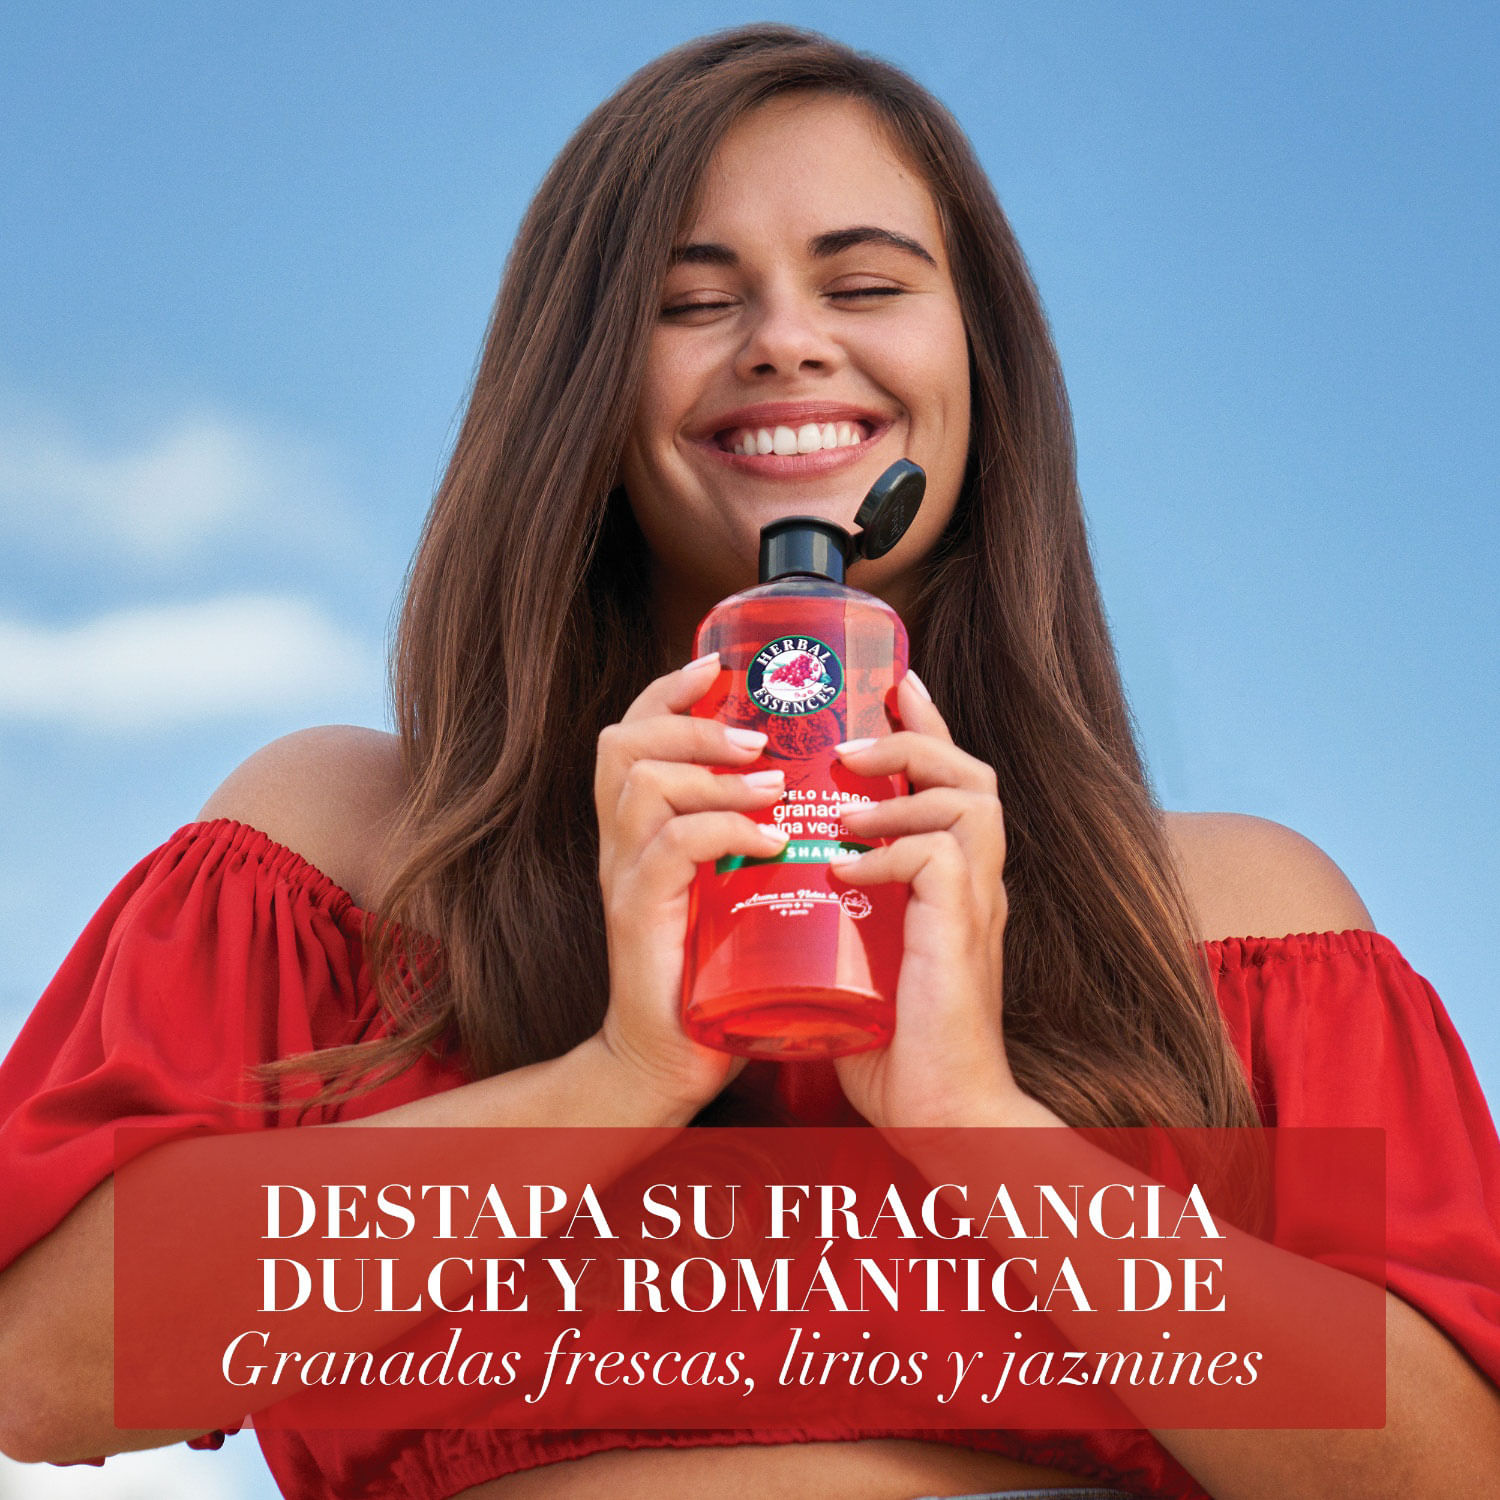 Comprar Shampoo Herbal Essences Pelo Largo Granada & Proteína Vegana 400 ml